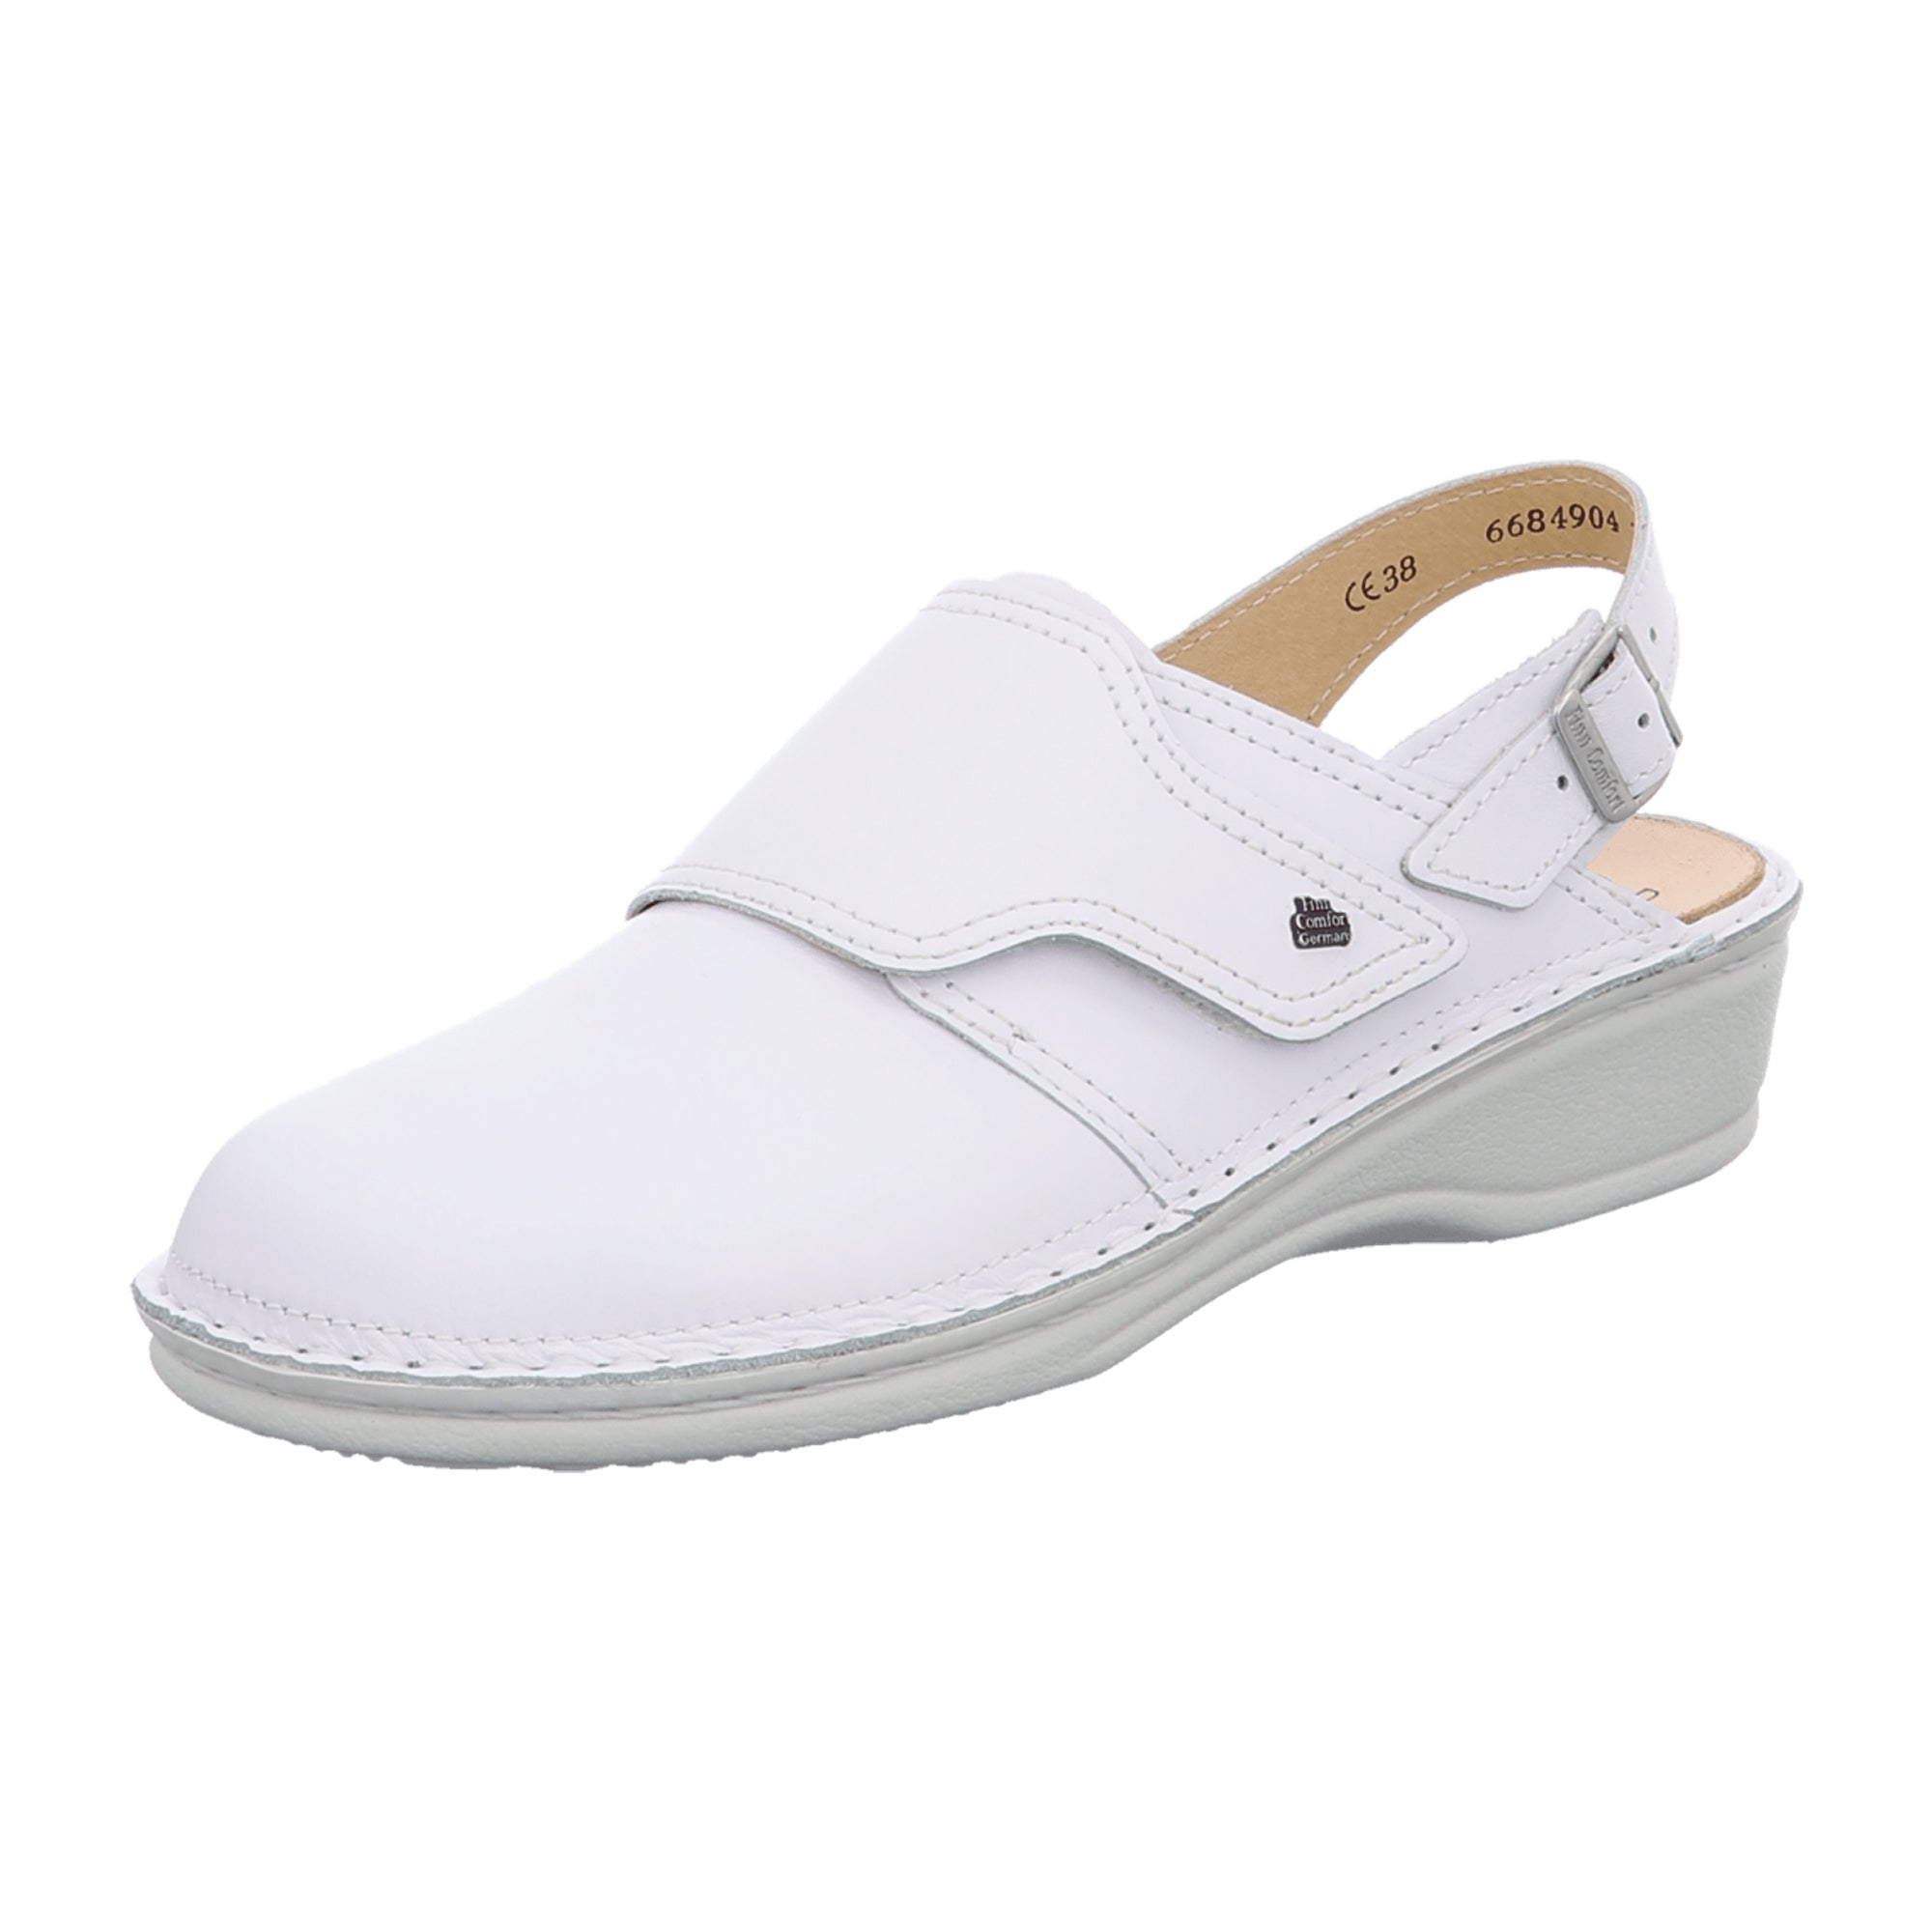 Finn Comfort Assuan White Women's Clog - Comfortable Slip-Resistant Nursing Shoes